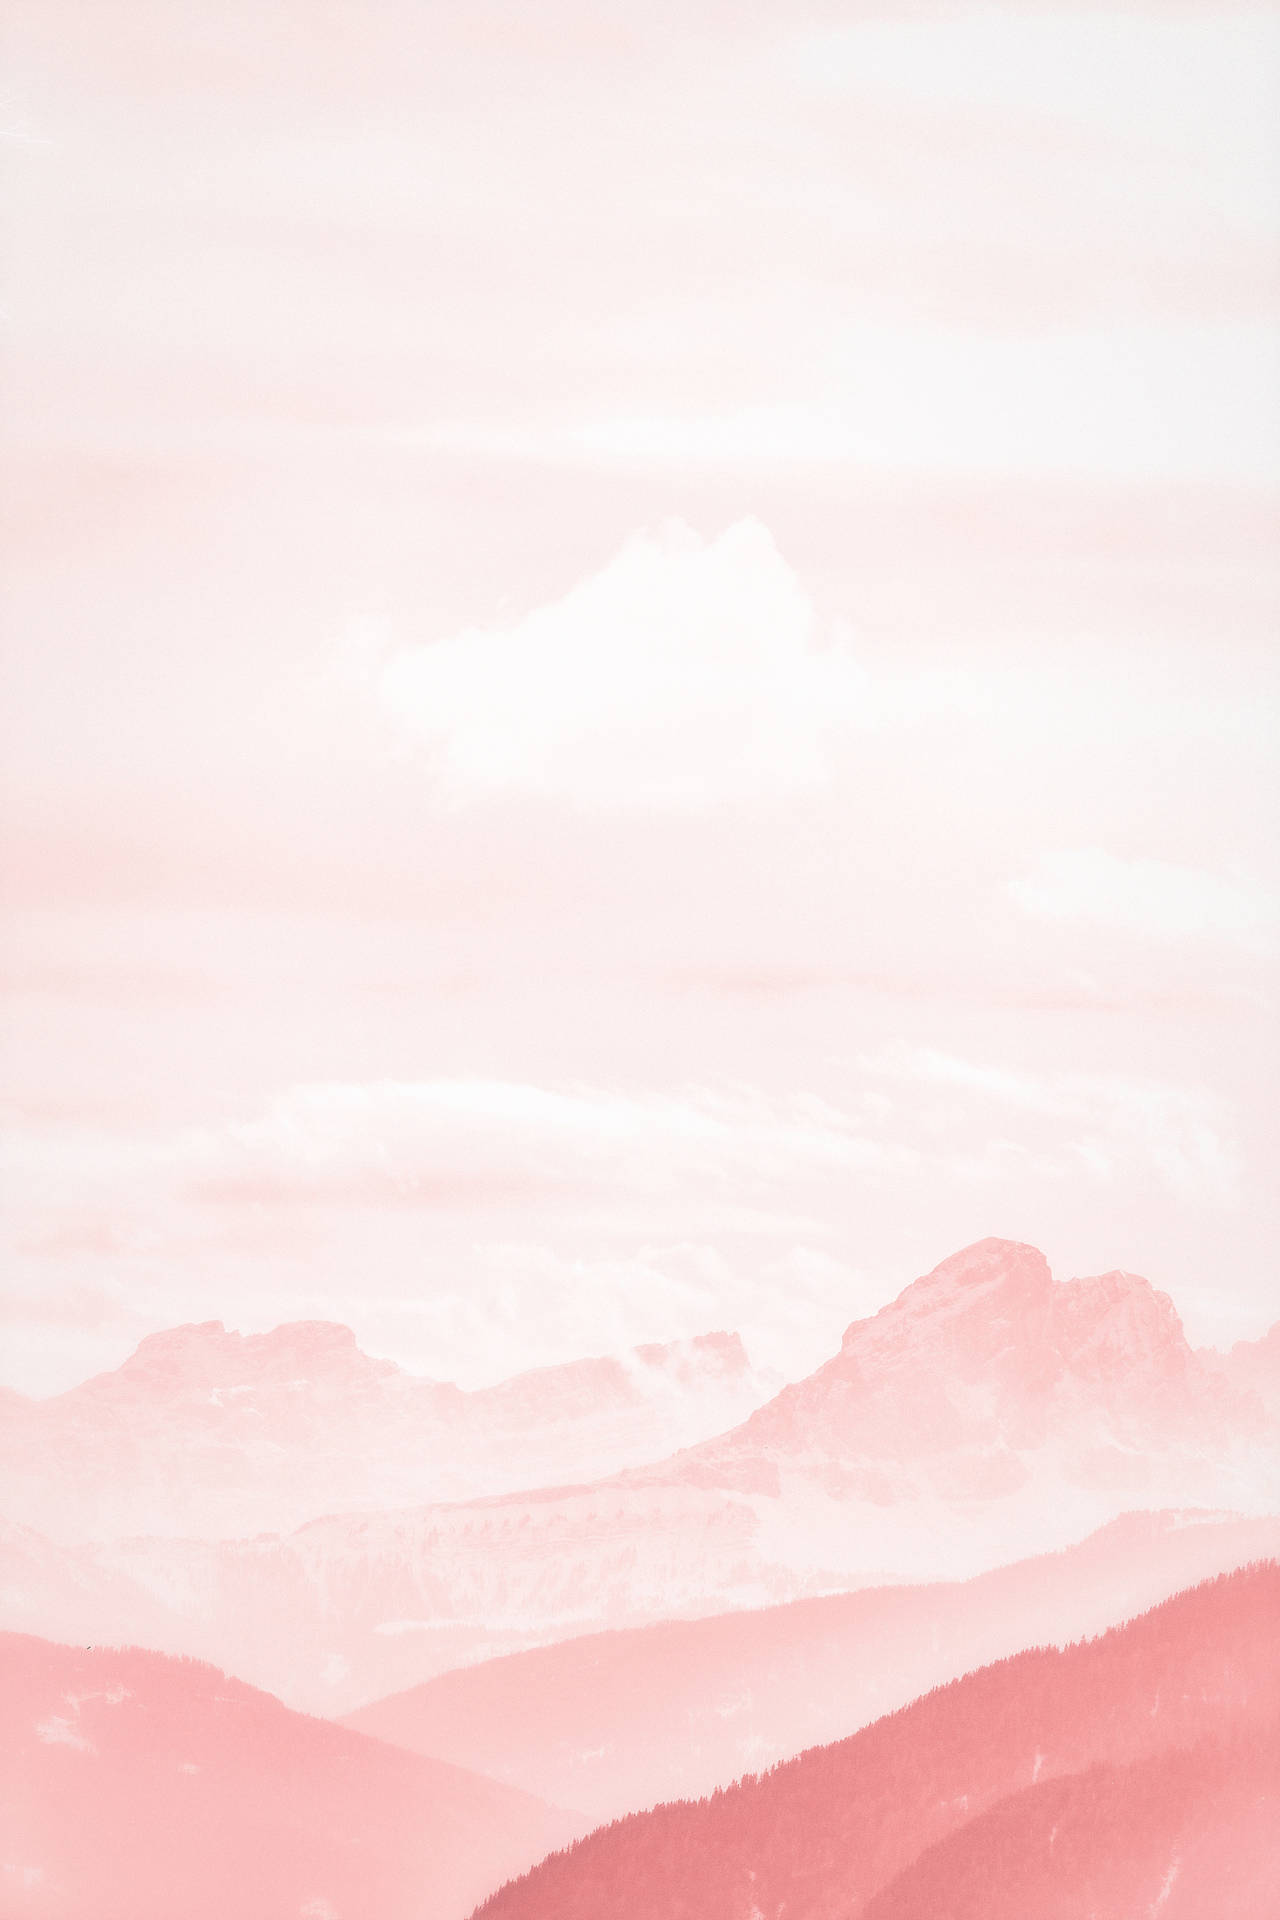 Et pink himmel med bjerge Wallpaper